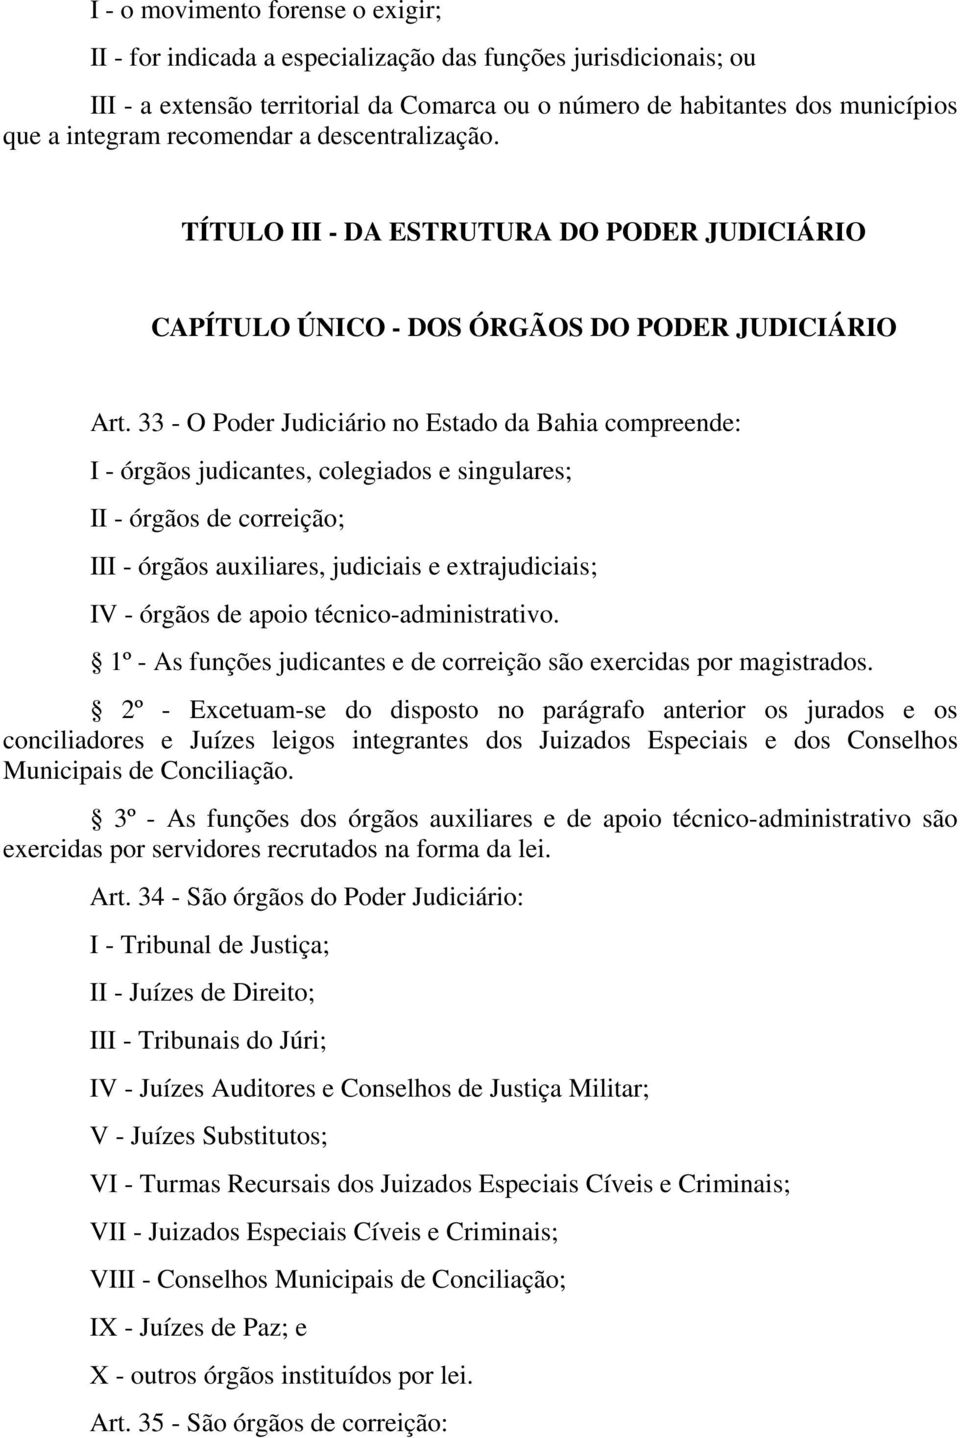 33 - O Poder Judiciário no Estado da Bahia compreende: I - órgãos judicantes, colegiados e singulares; II - órgãos de correição; III - órgãos auxiliares, judiciais e extrajudiciais; IV - órgãos de